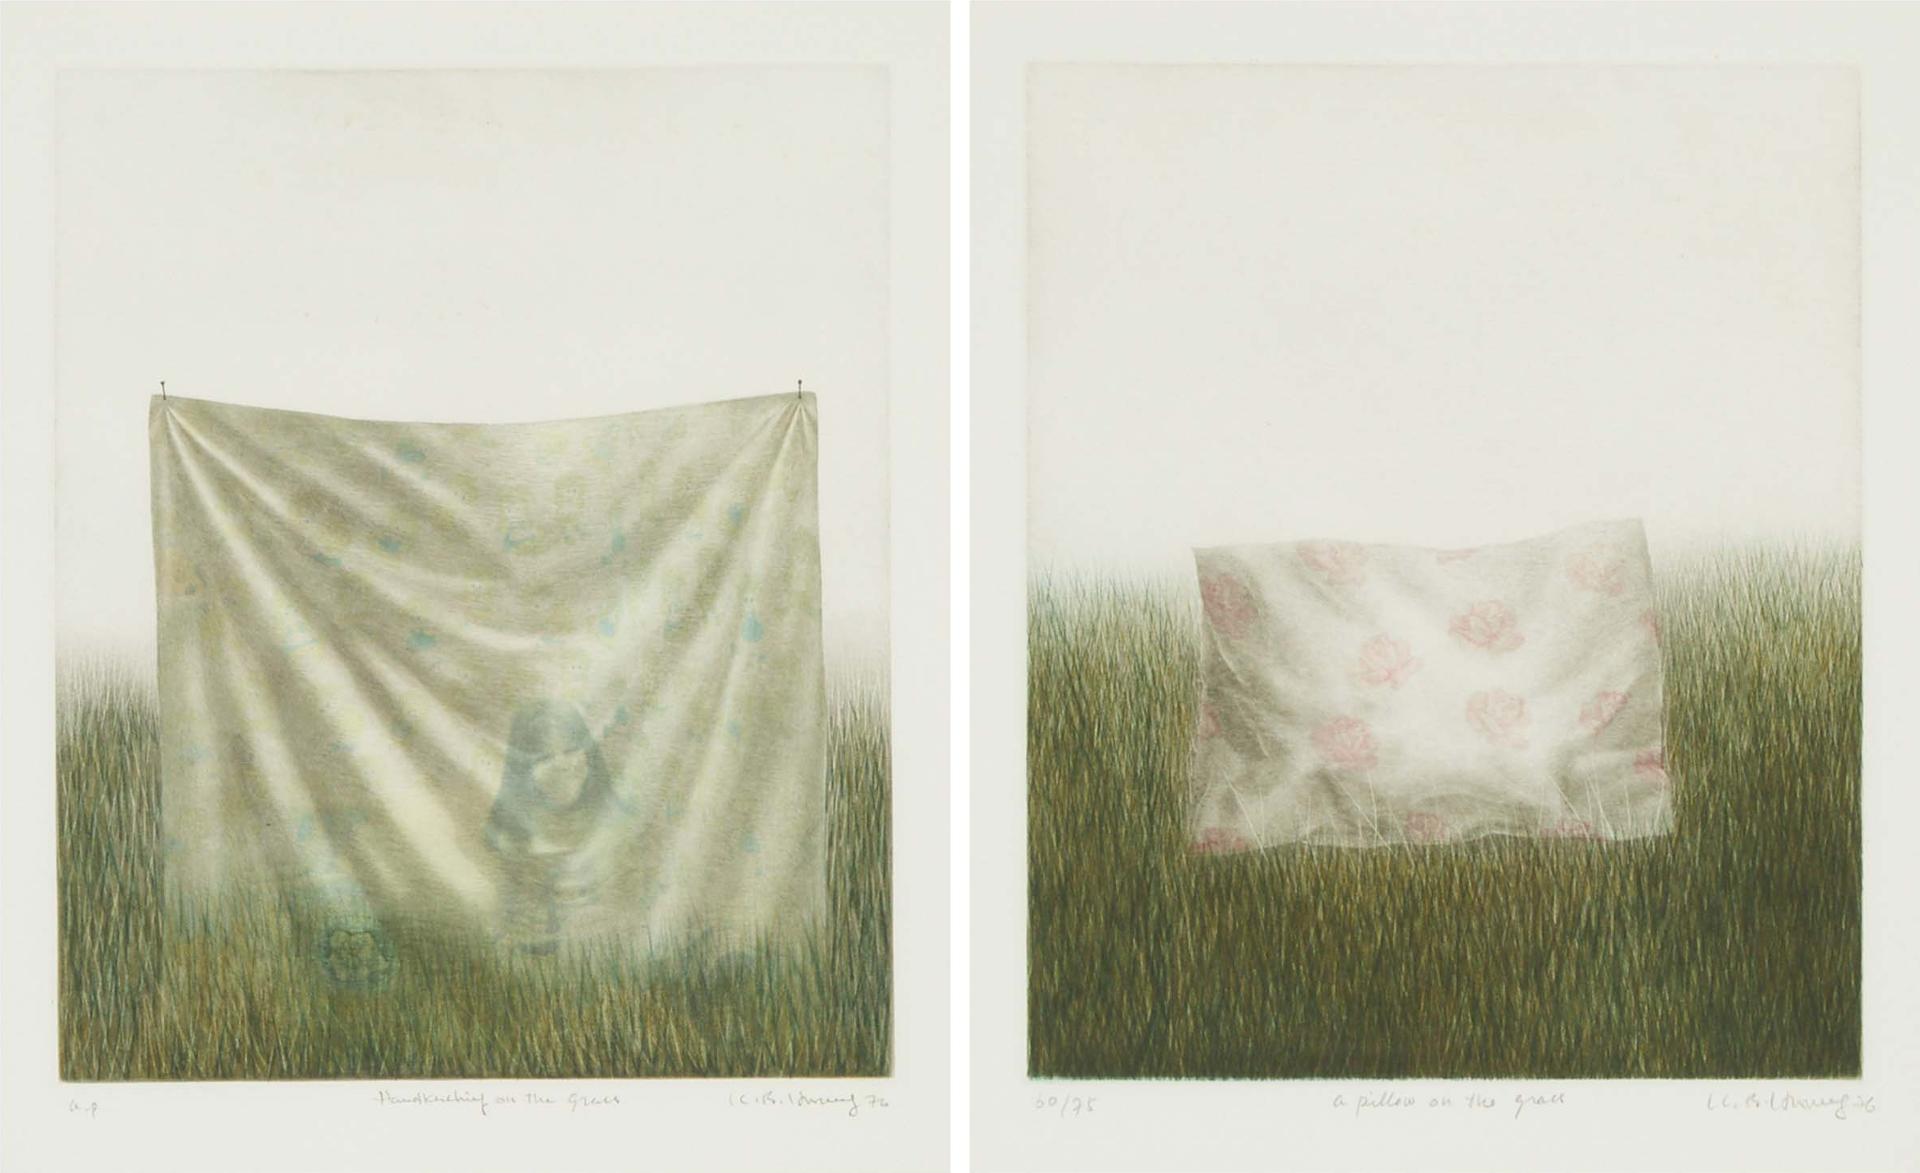 Hwang Kyu-Baik - A Pillow On The Grass; Handkerchief On The Grass, 1976